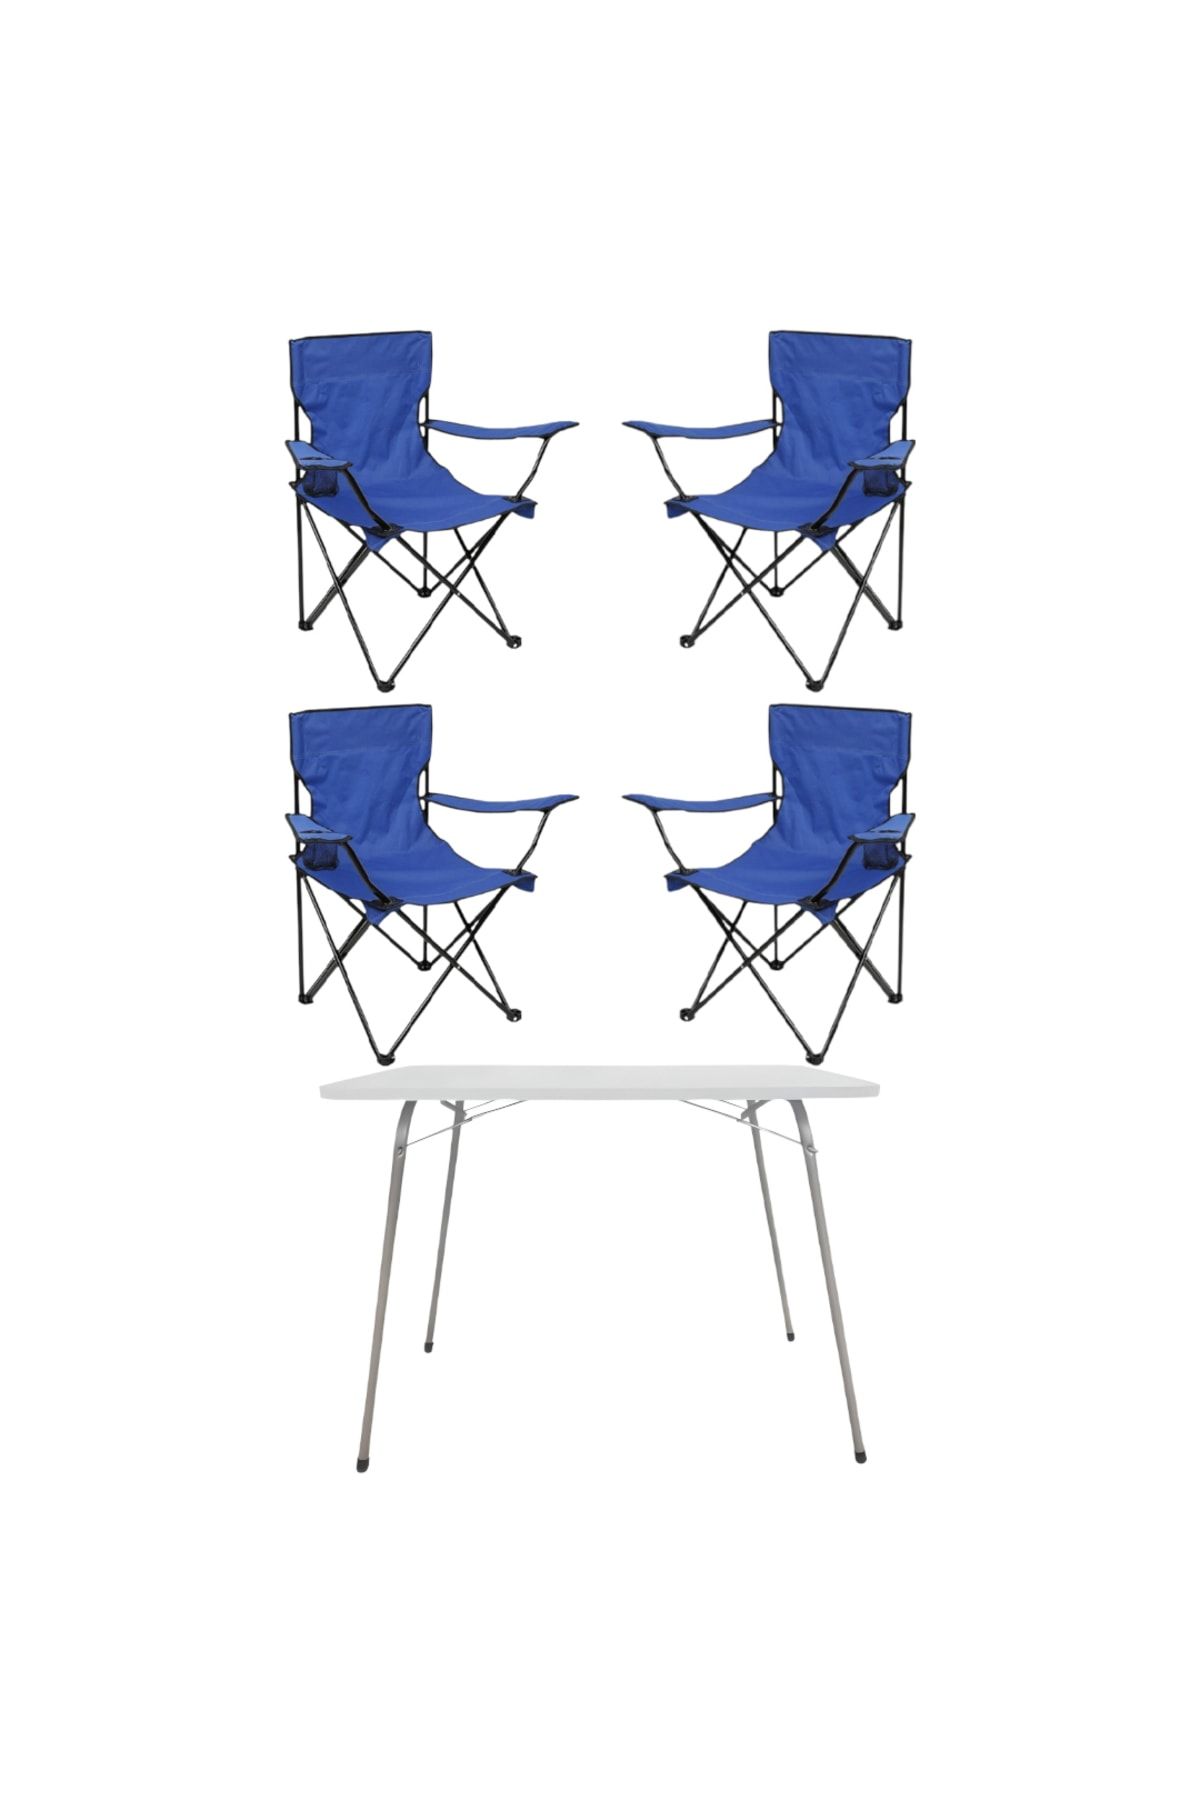 Tedarikcenter 4 Adet Katlanır Kamp Sandalyesi Mavi 1 Adet 60x45 Katlanır Kamp Masası Beyaz